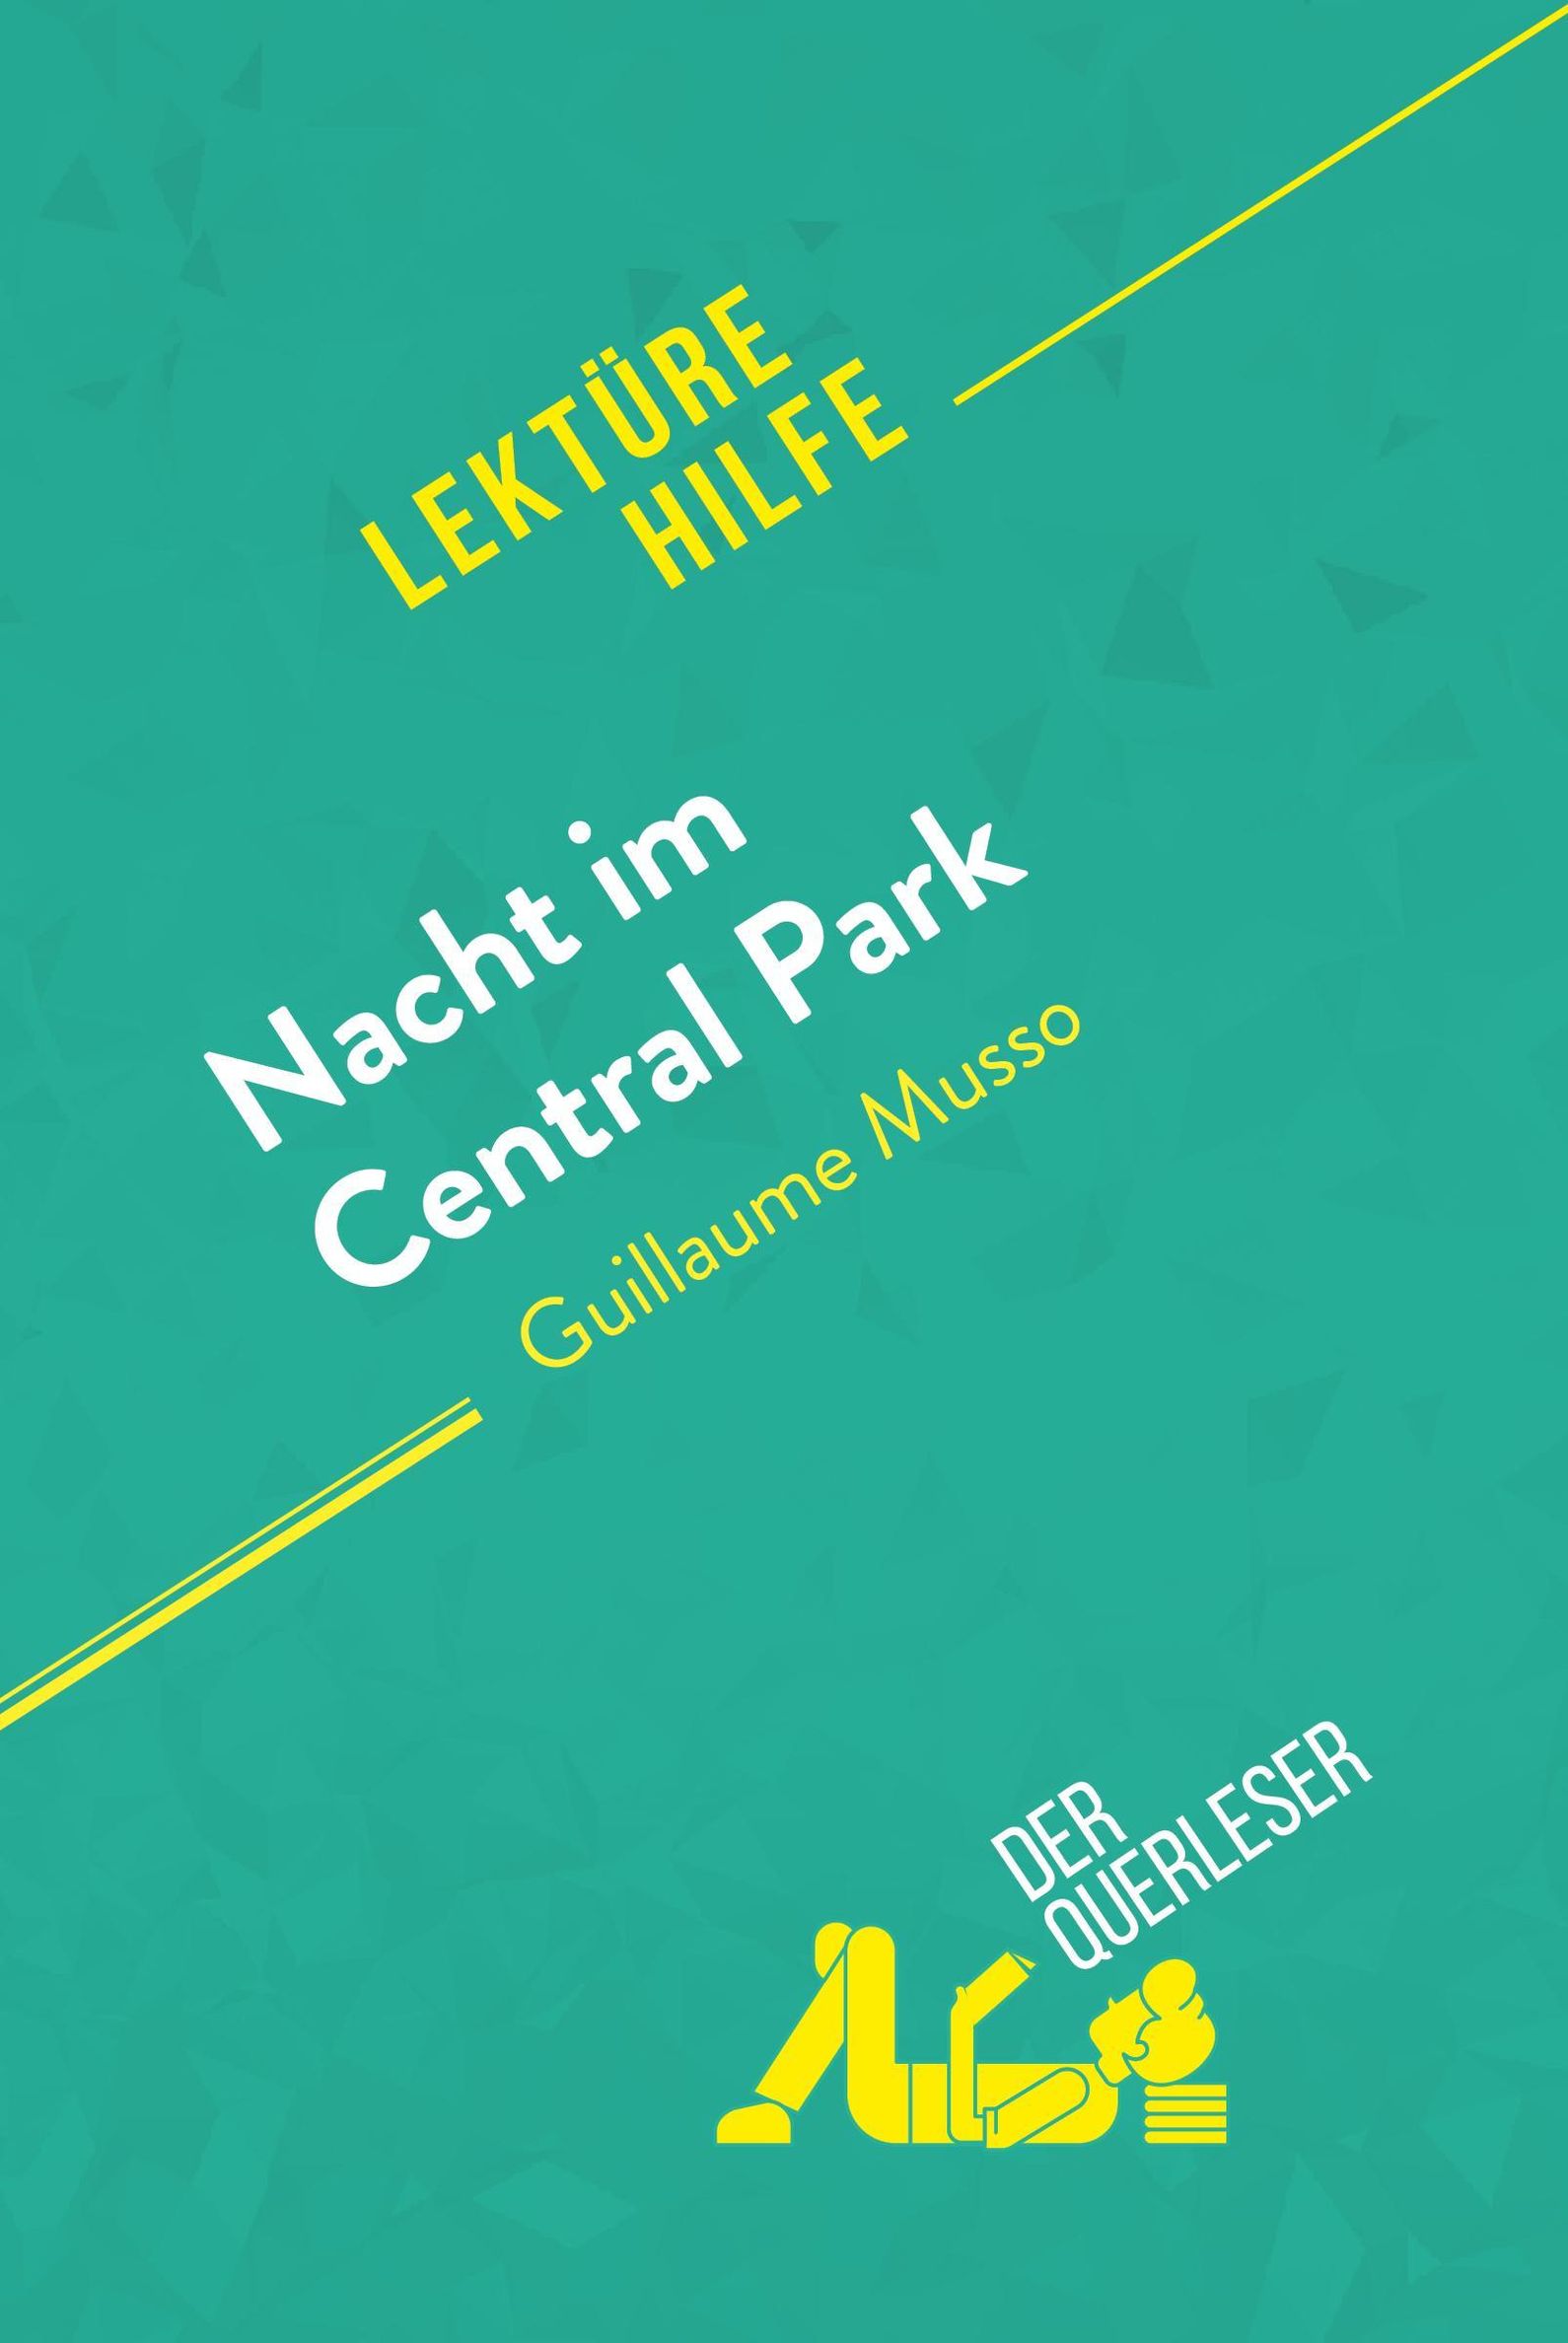 Central Park de Guillaume Musso